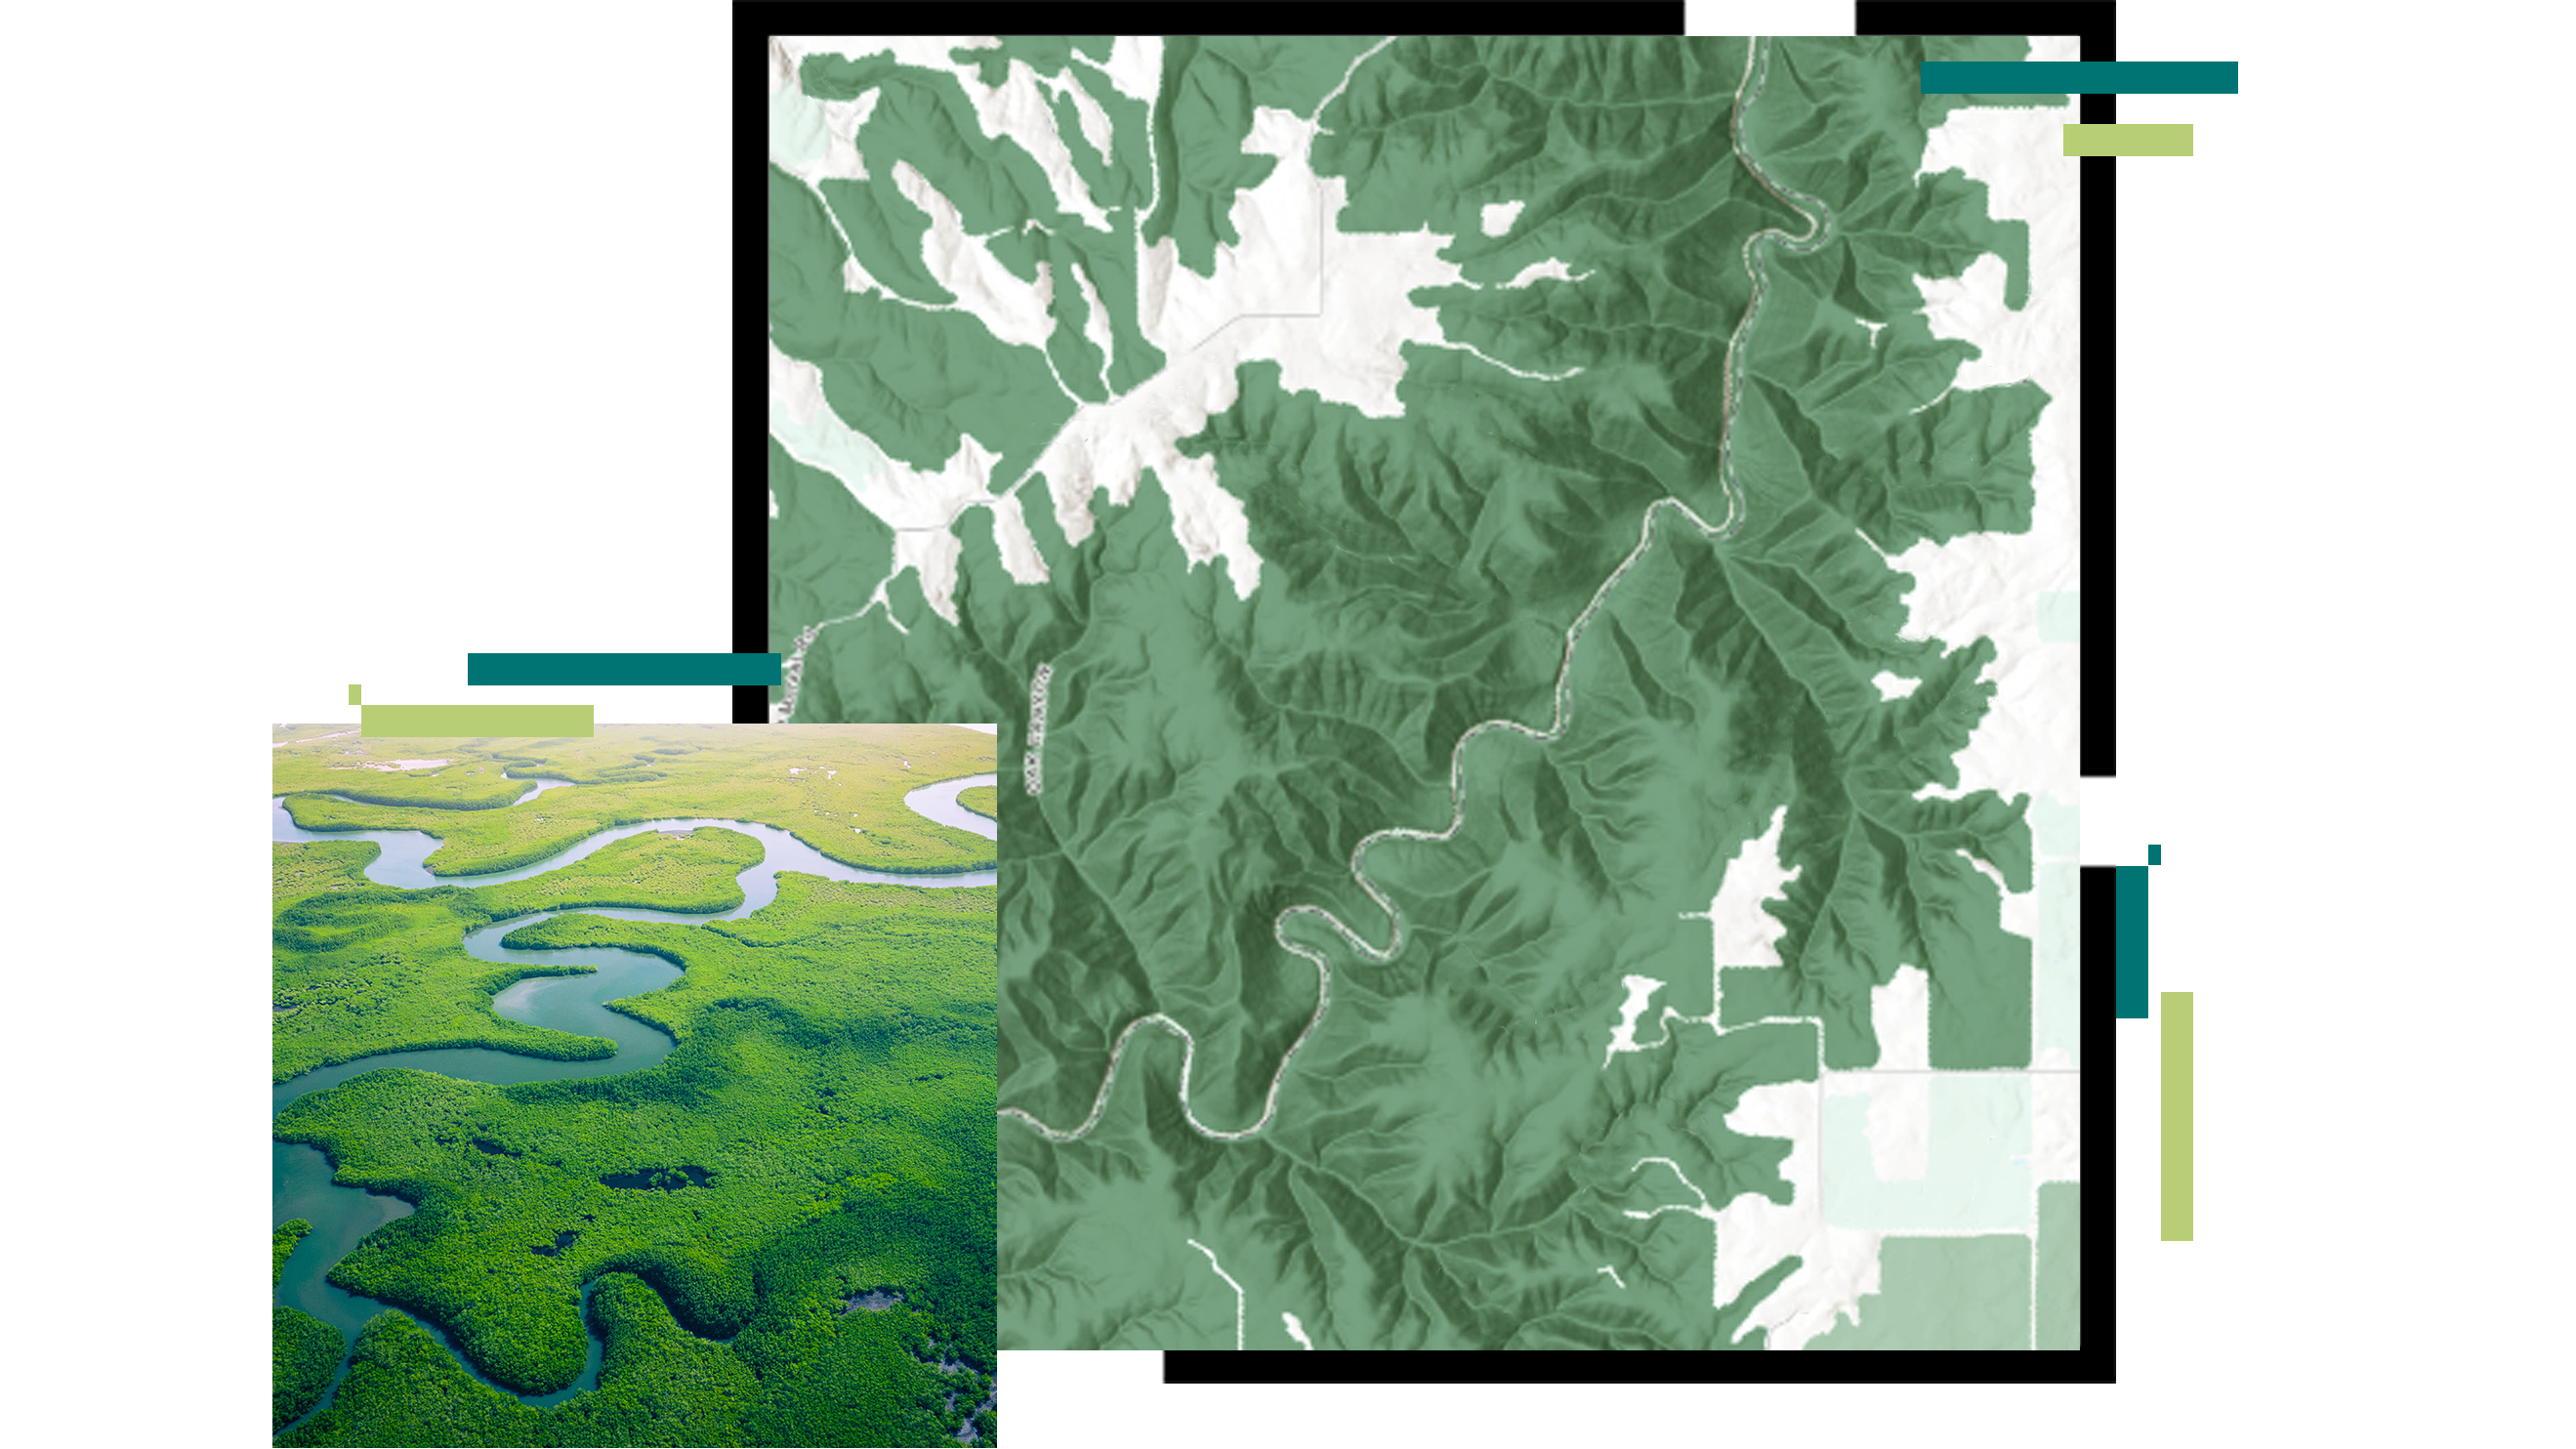 Carte en relief d’une rivière tortueuse, à laquelle se superpose une image aérienne d’une mangrove d’un vert éclatant traversée par une rivière bleue